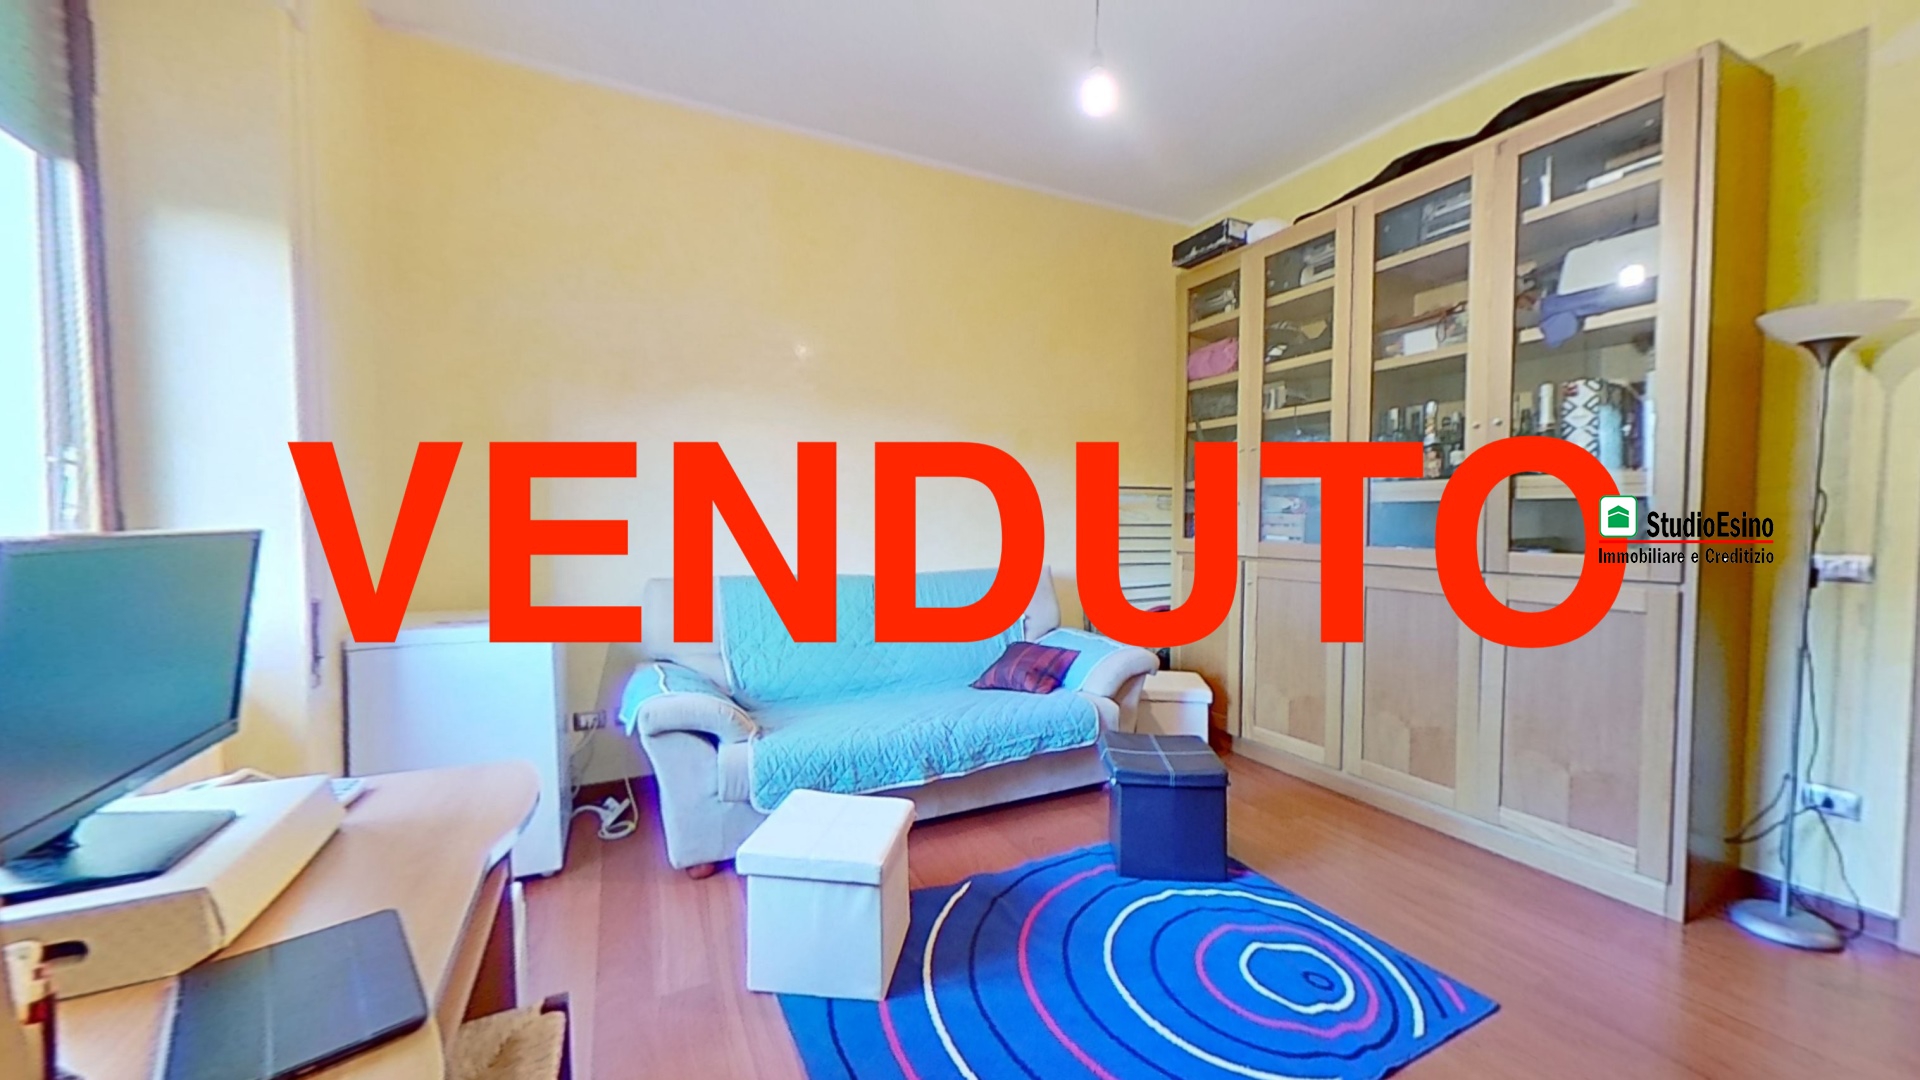 Appartamento in vendita a Ascoli Piceno, 3 locali, prezzo € 105.000 | PortaleAgenzieImmobiliari.it